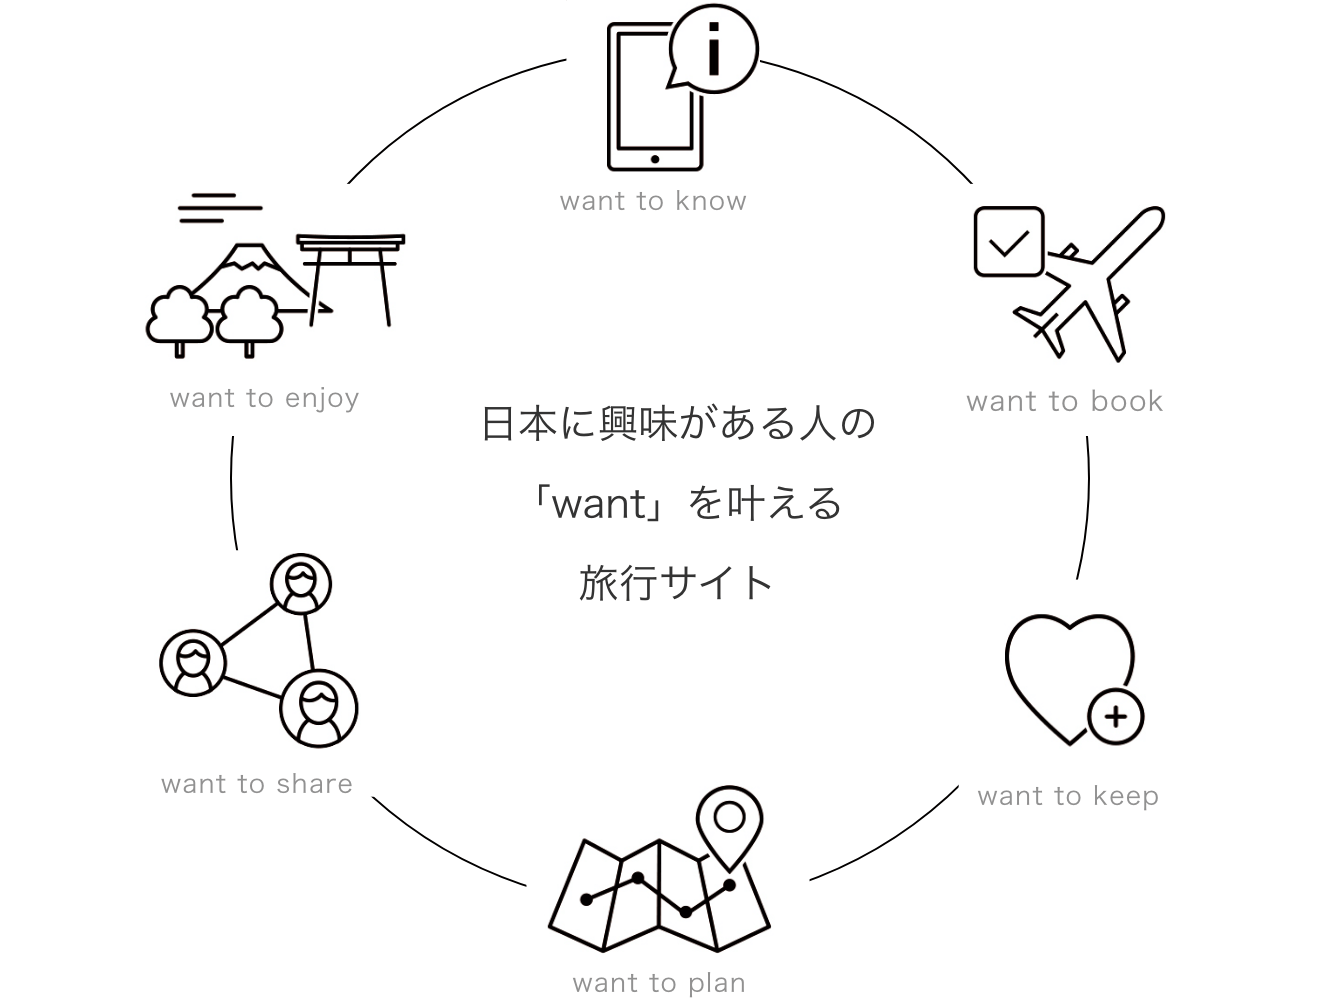 日本に興味がある人の「want」を叶える旅行サイト